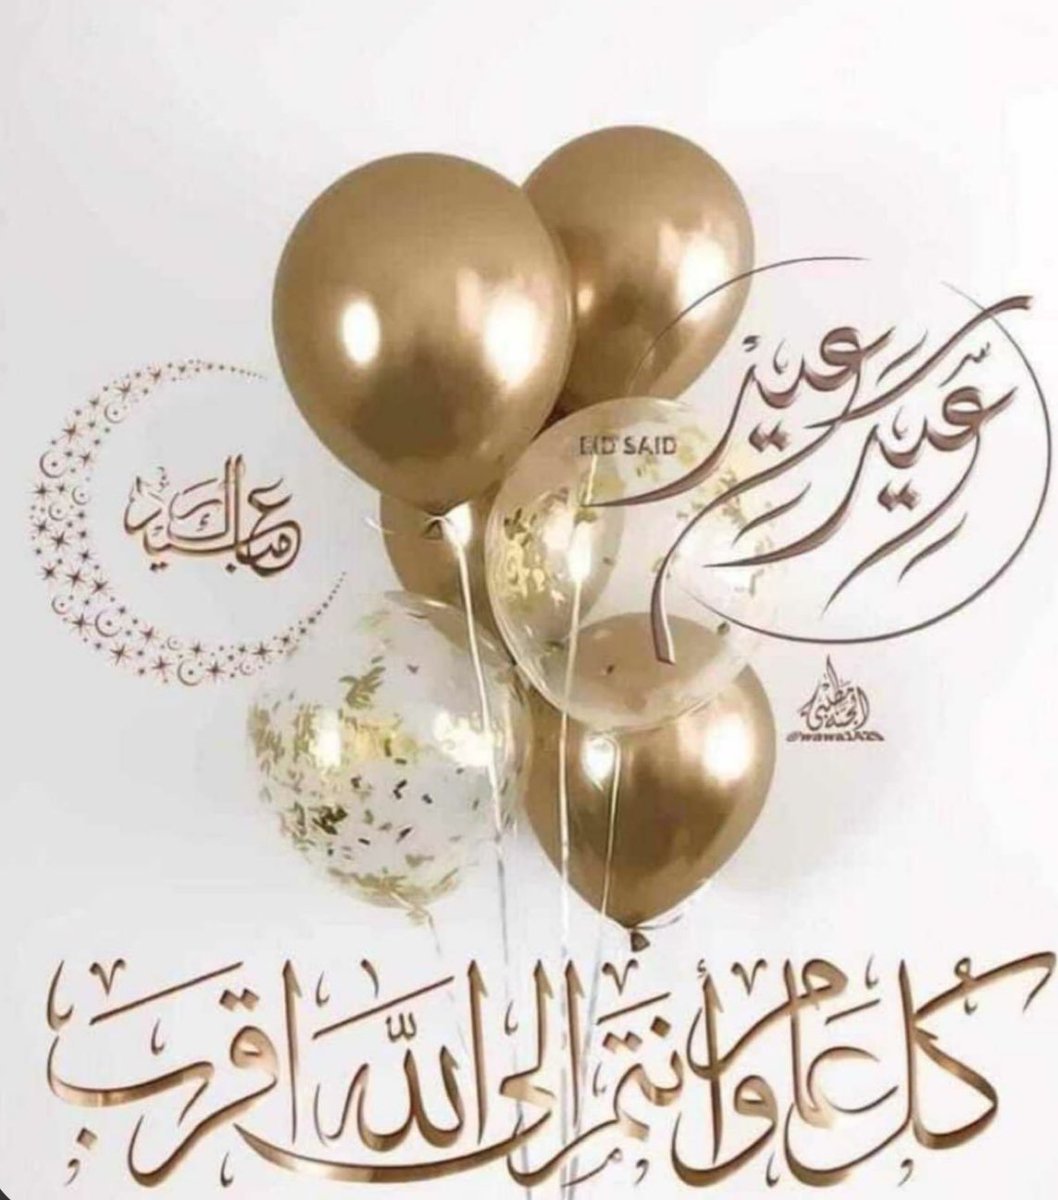 @FDDDll يارب اللهم استجب لنا عيدكم مبارك ينعاد دايم عليكم بالخير والسعادة والعافية أخي العزيز 💐💐